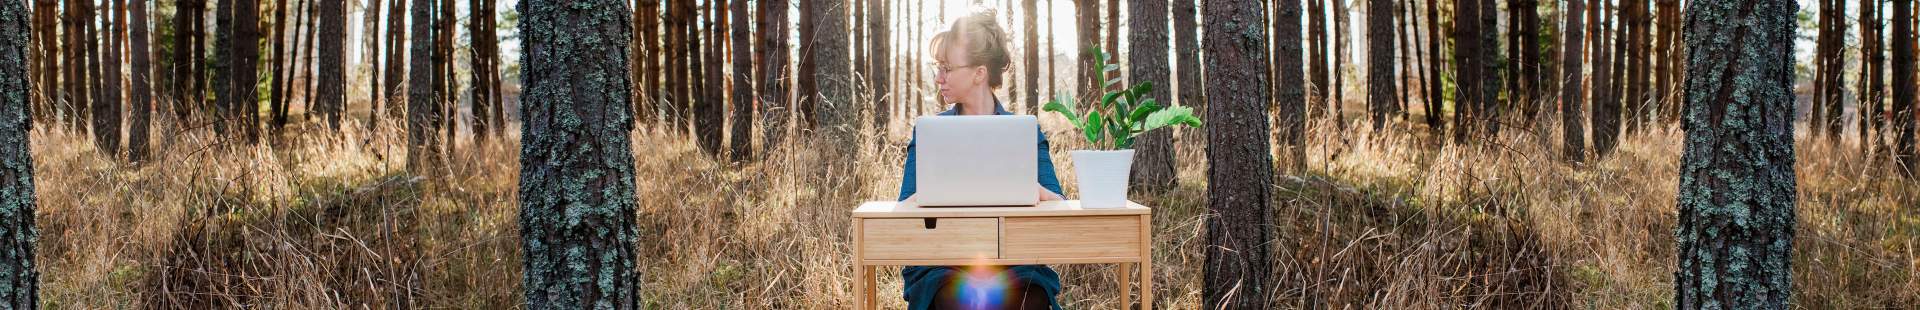 Frau sitzt mit ihrem Laptop in einem Wald